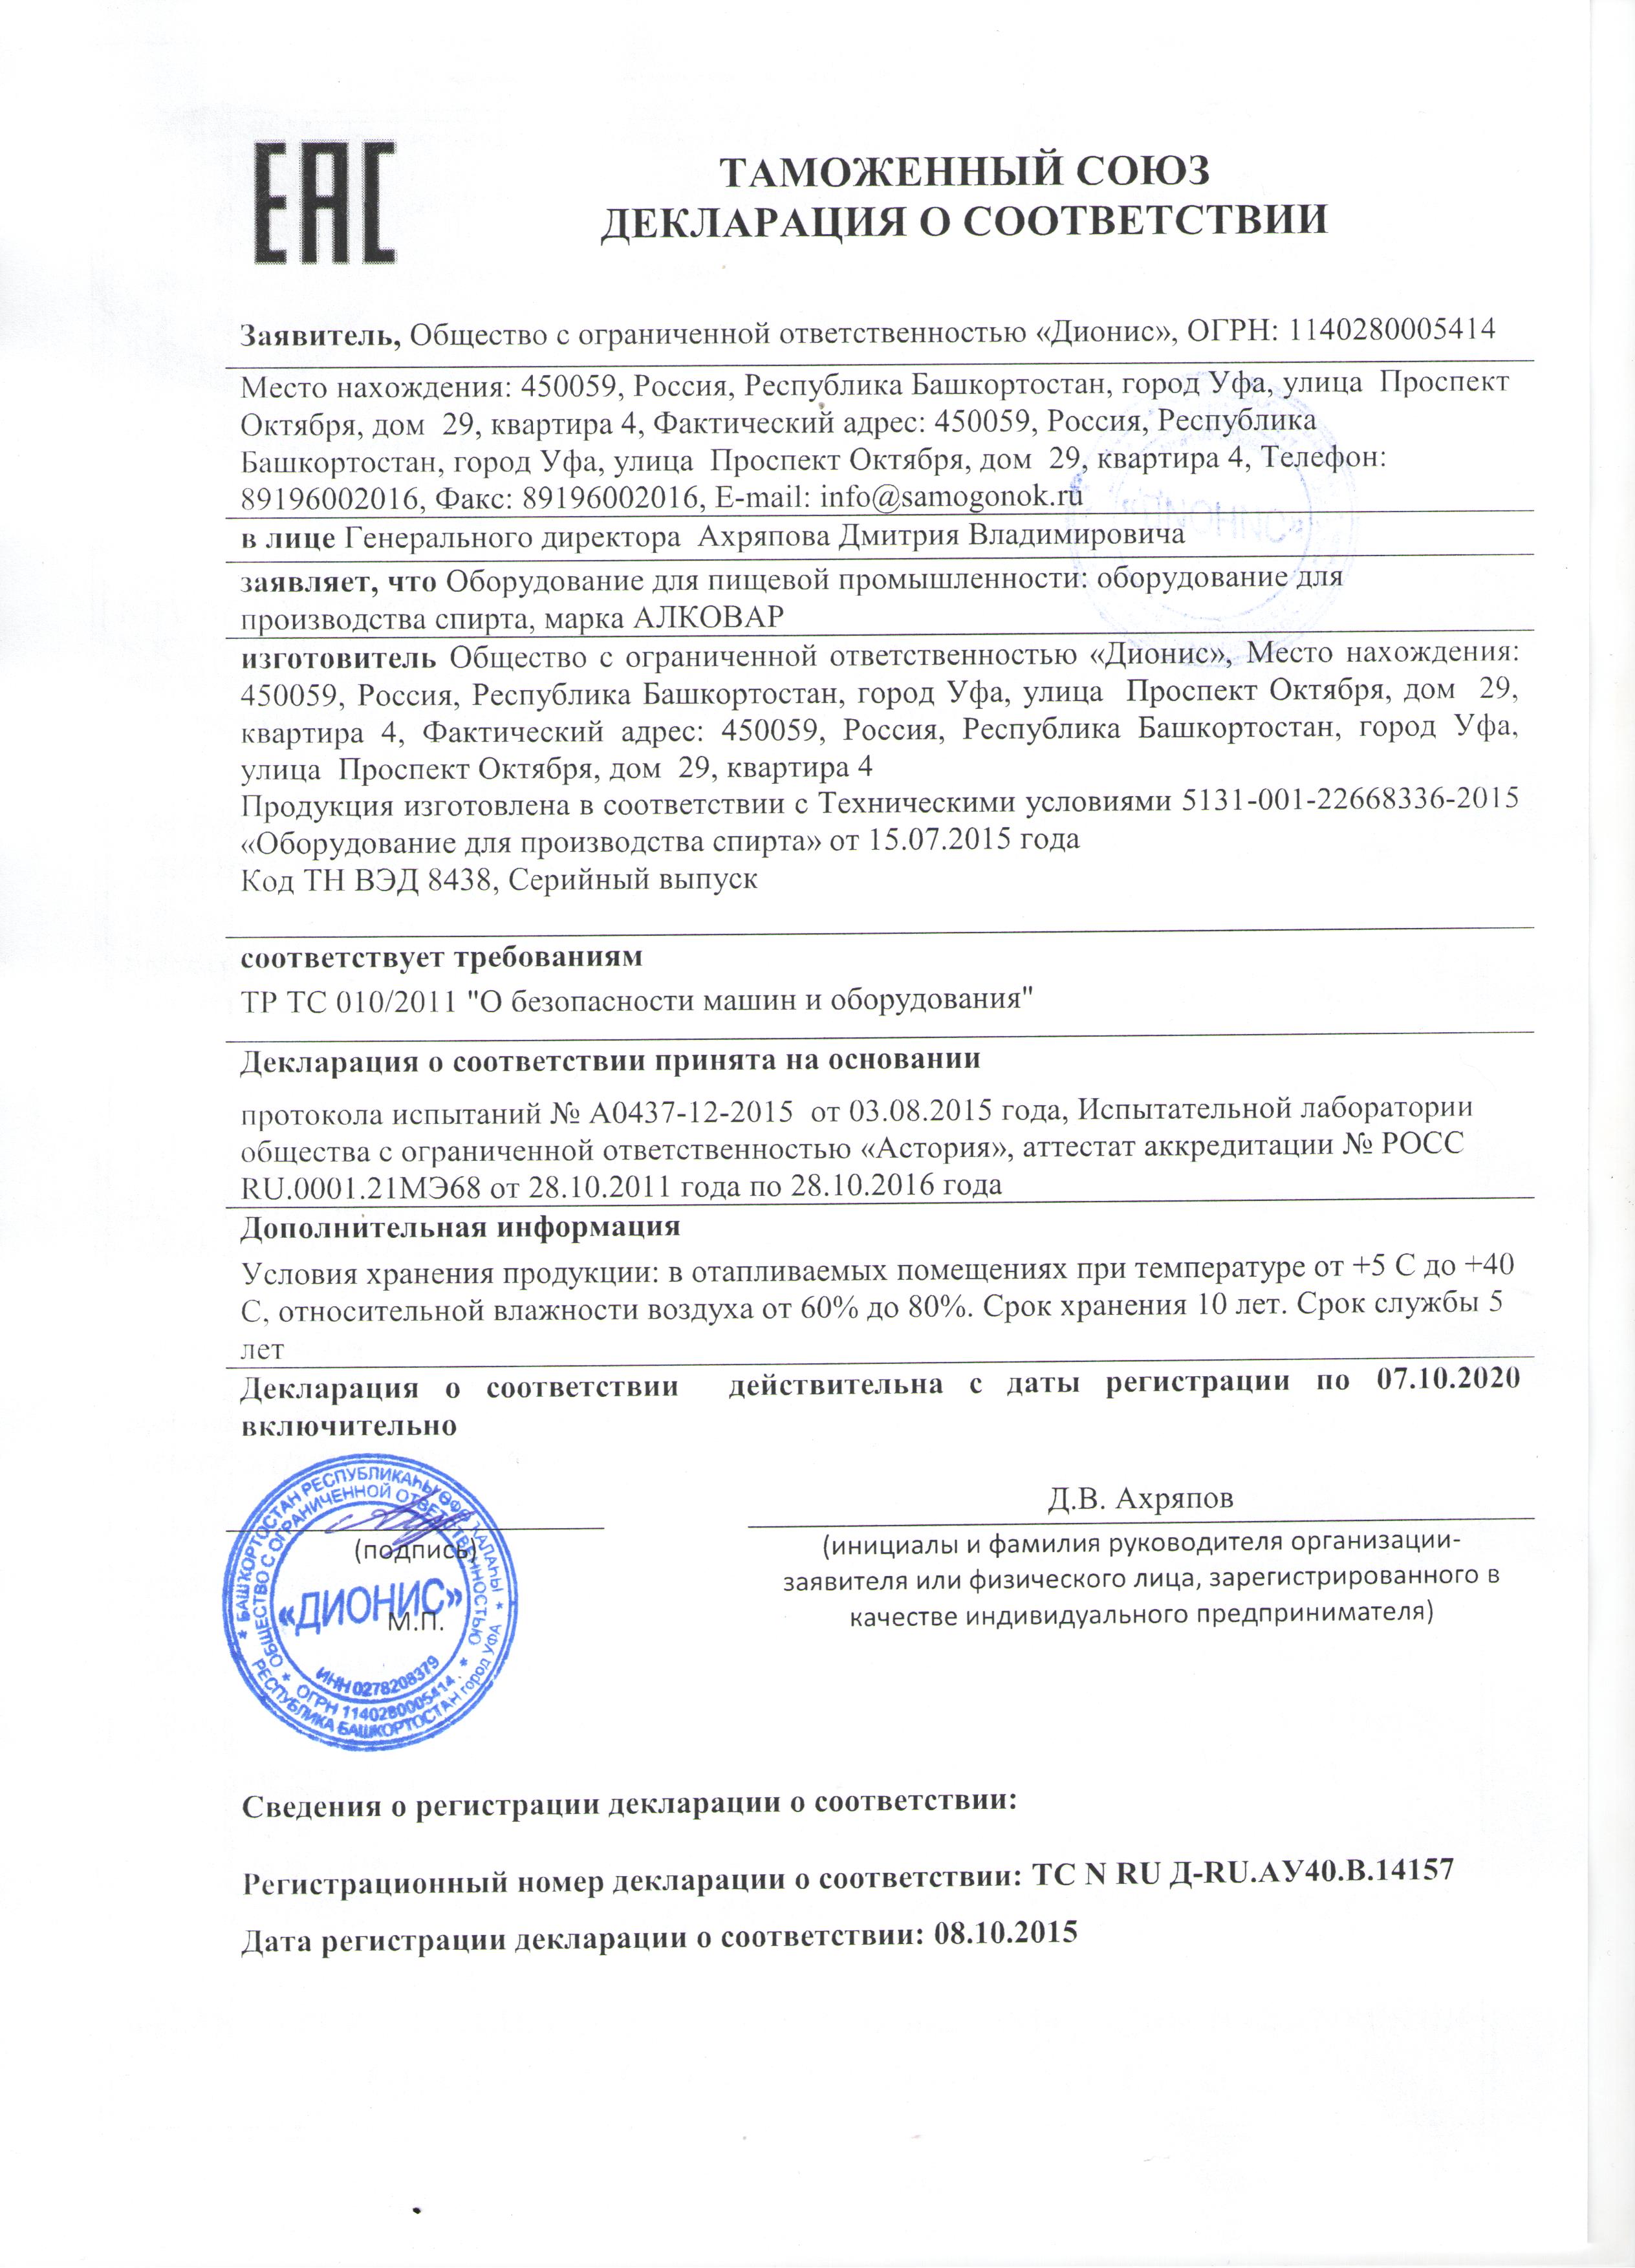 Декларация соответсвия на самогонные аппараты АЛКОВАР